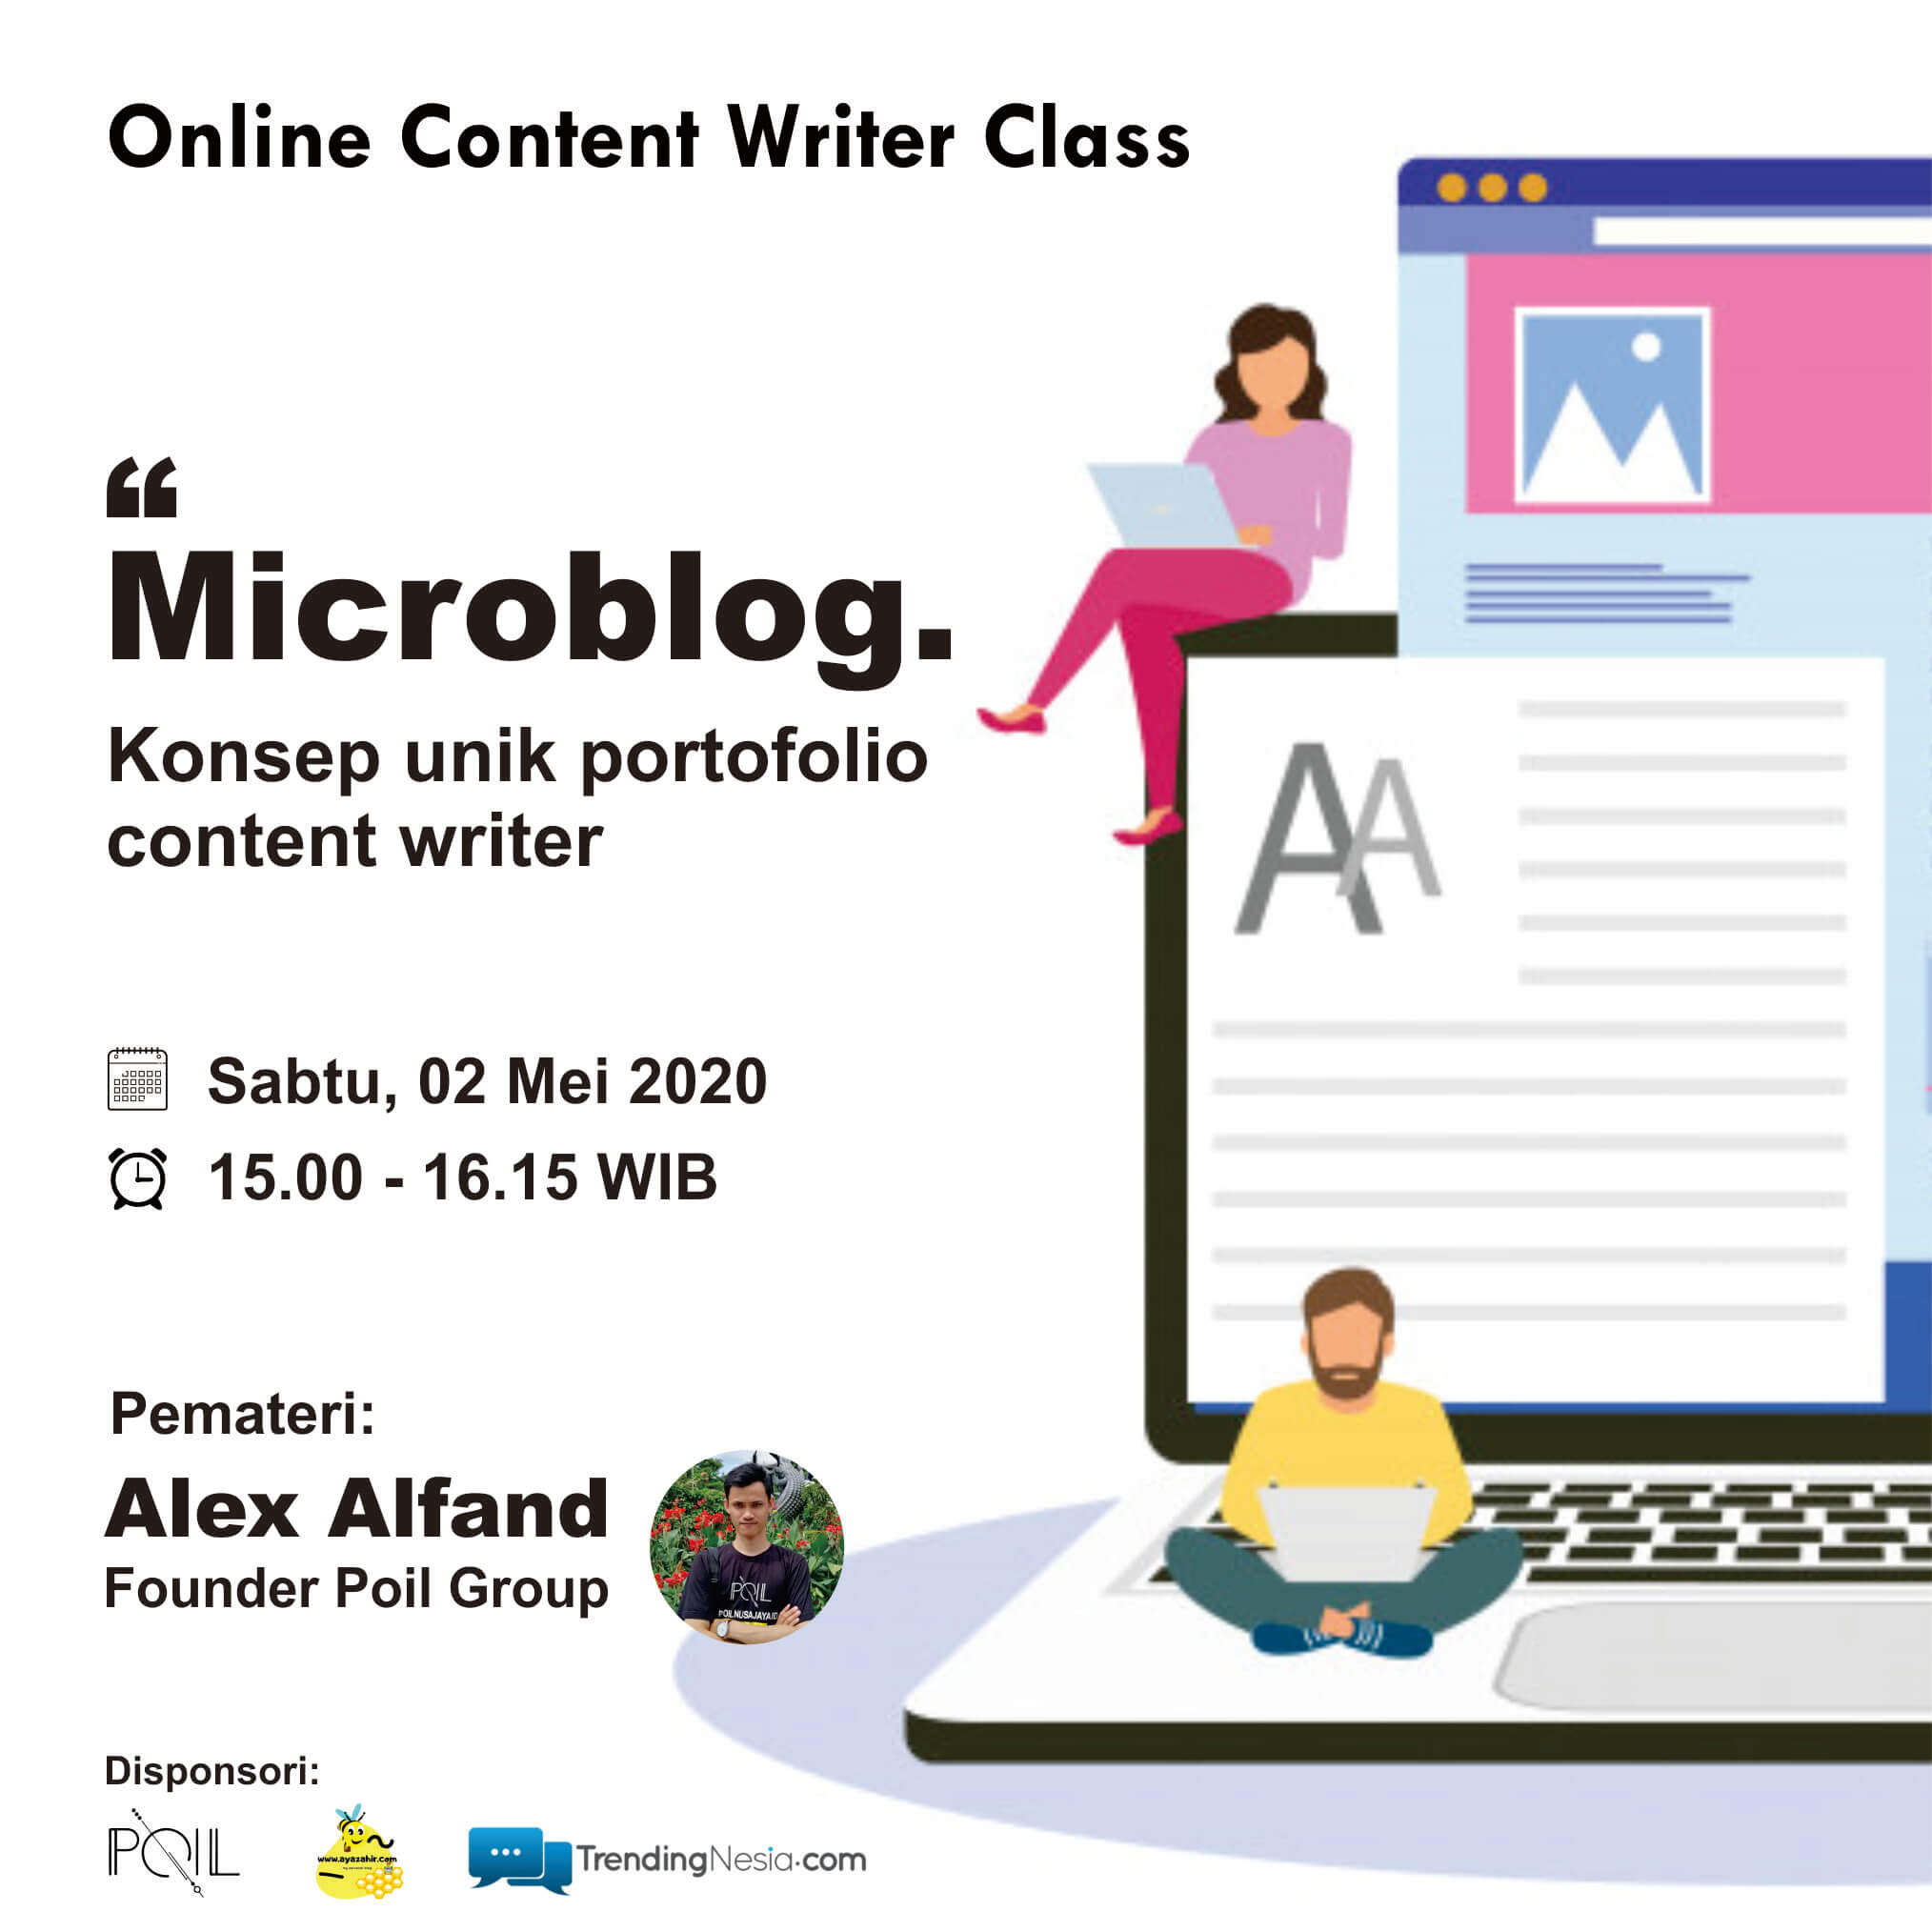 Mikroblog Adalah, Microblog Adalah, Microblog Adalah Istilah Untuk, Microblog Instagram Template, Portfolio Content Writer, Contoh Portofolio Content Writer, Portfolio For Content Writers